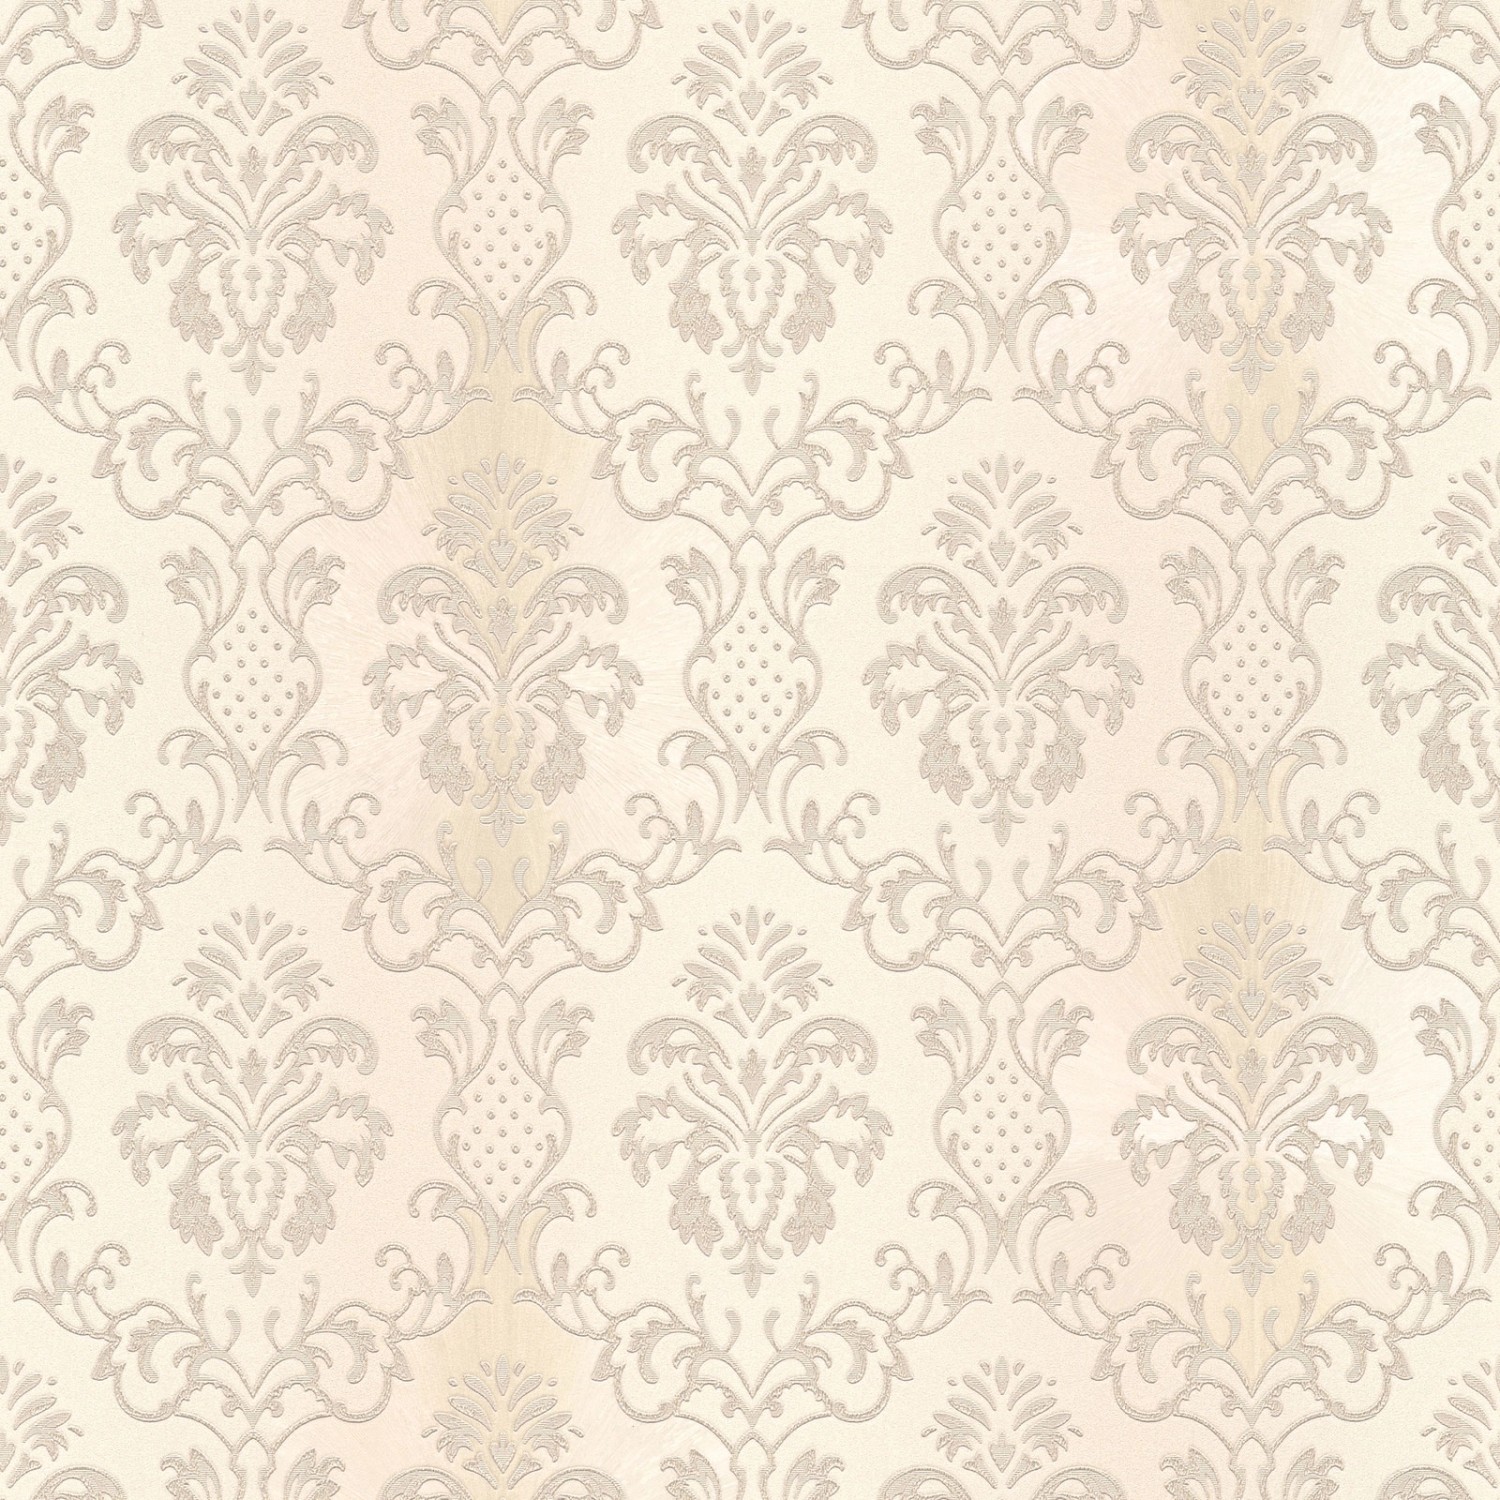 Bricoflor Ornament Tapete in Creme Silber Esszimmer und Schlafzimmer Vliestapete mit Barock Muster Elegante Vlies Muster